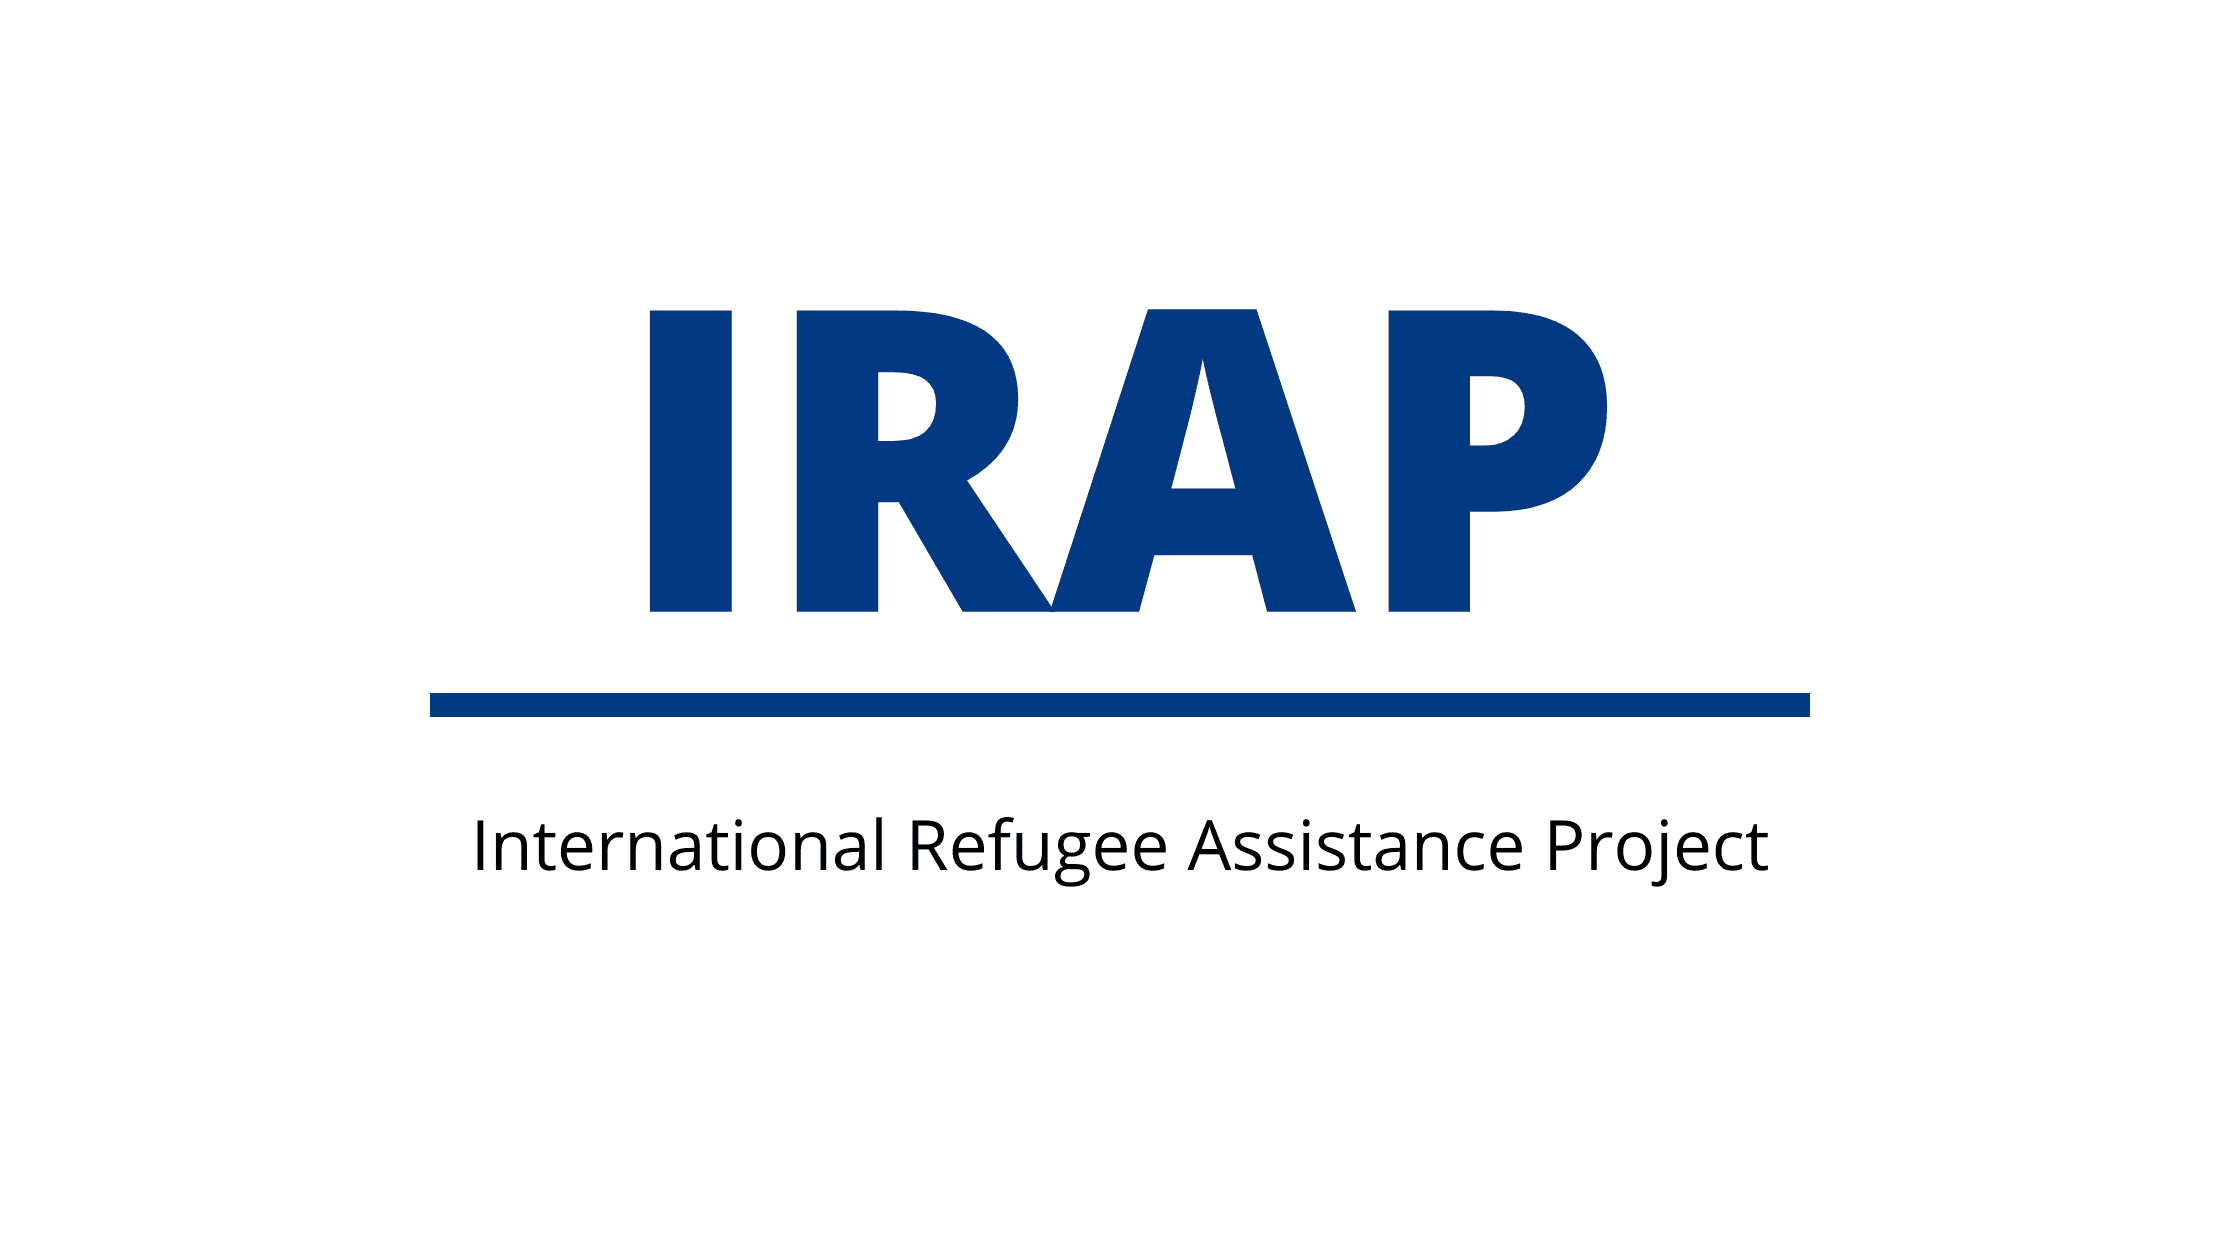 IRAP (International Refugee Assistance Project) SLP Logo